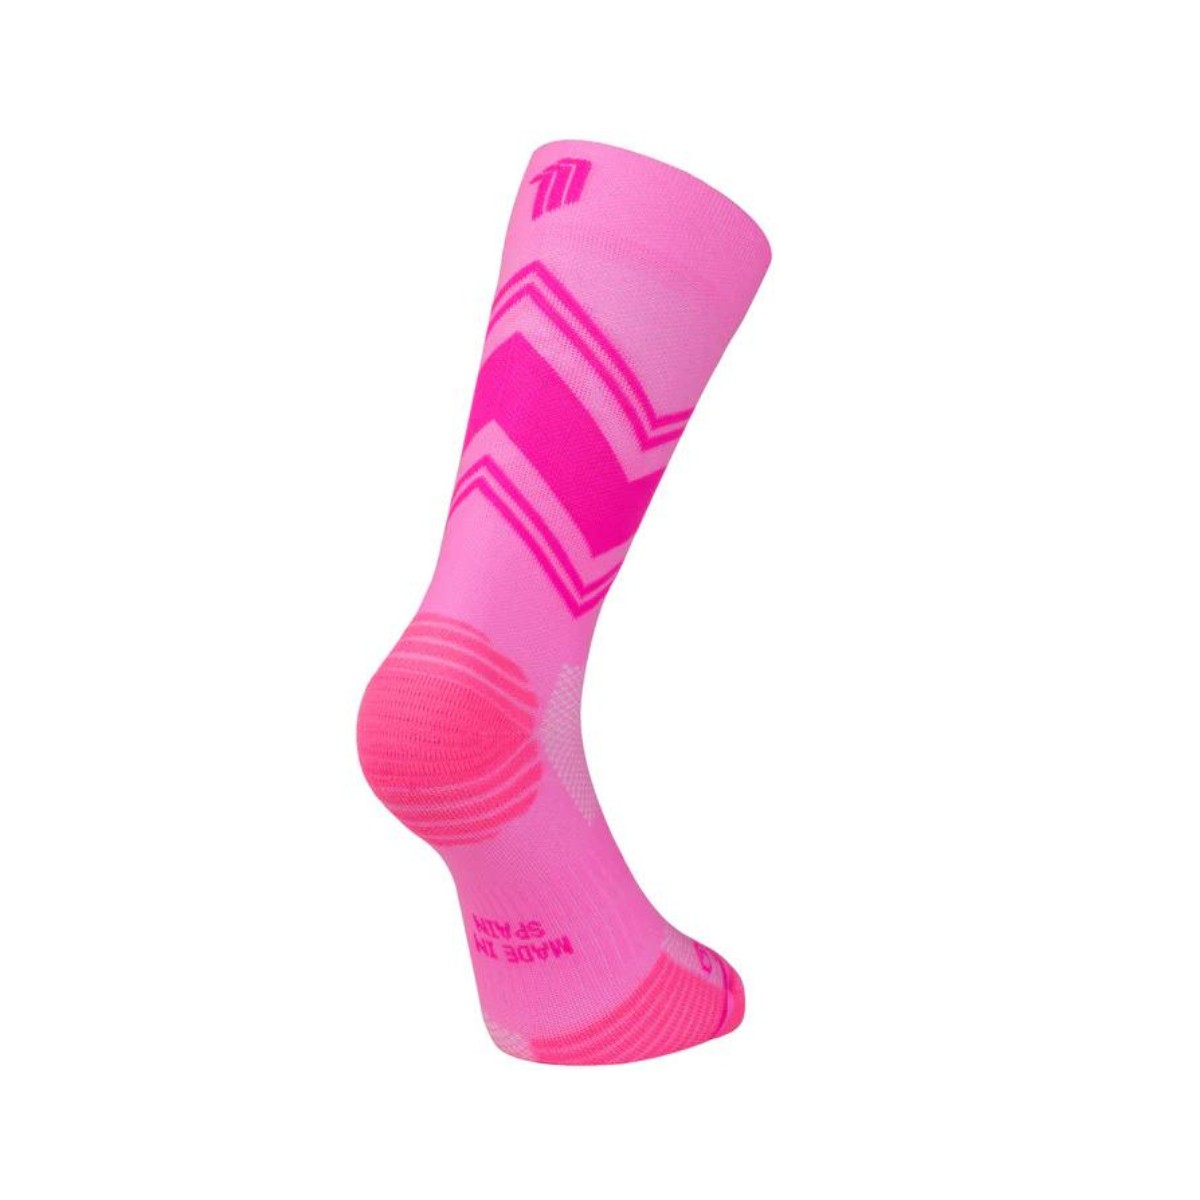 Posh günstig Kaufen-Sporcks Posh Pink Socken, Größe L. Sporcks Posh Pink Socken, Größe L <![CDATA[Sporcks Posh Pink Socken Verbessern Sie Ihr Lauferlebnis mit den Sporcks Posh Pink Socken, die für hervorragenden Halt und Komfort bei jedem Schritt sorgen.